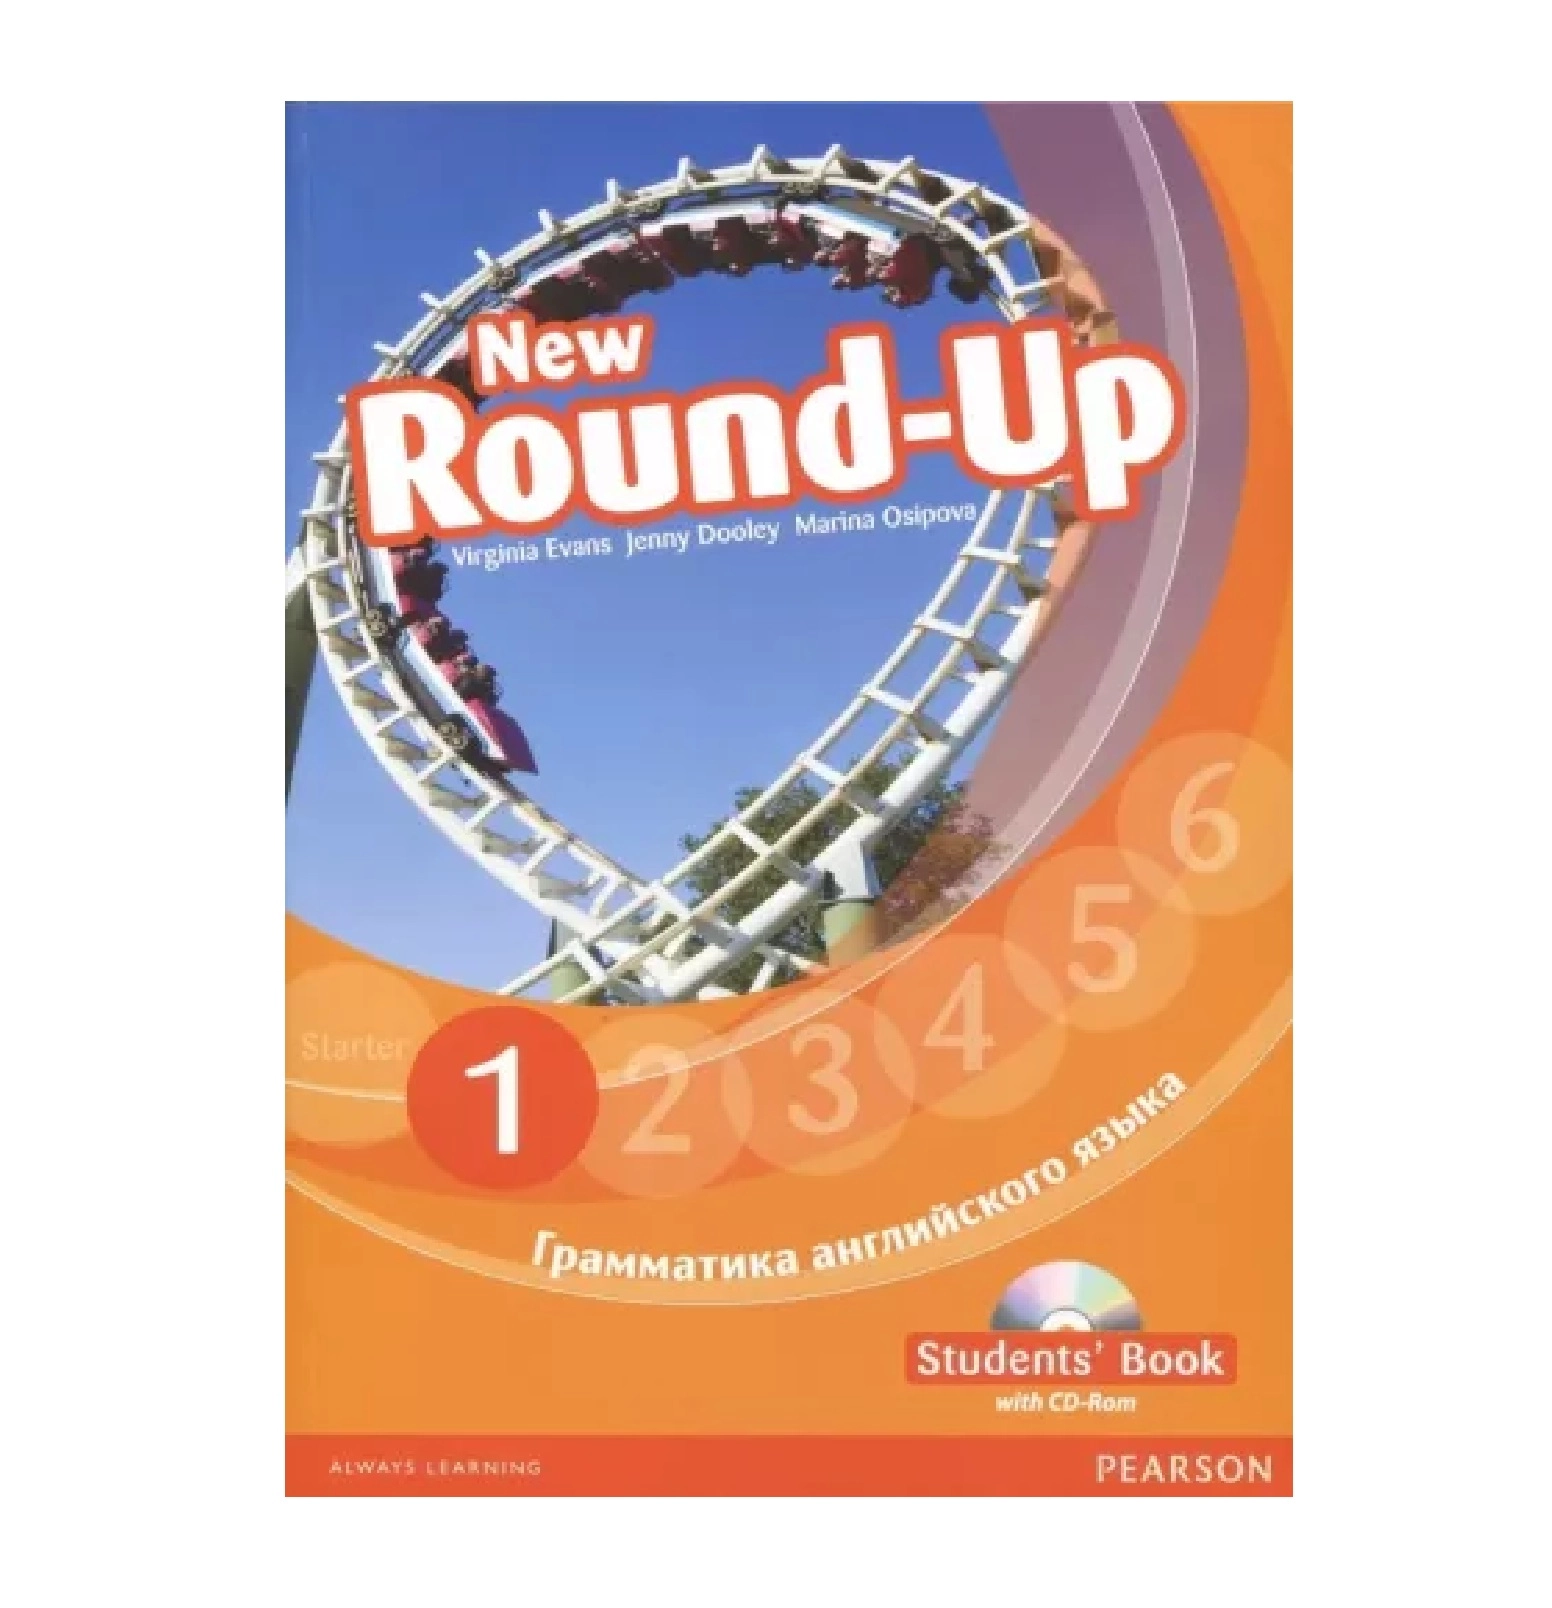 New round up 6. Round up 1 Virginia Evans. Английский New Round up Starter. Round up 1 students book грамматика английского языка.